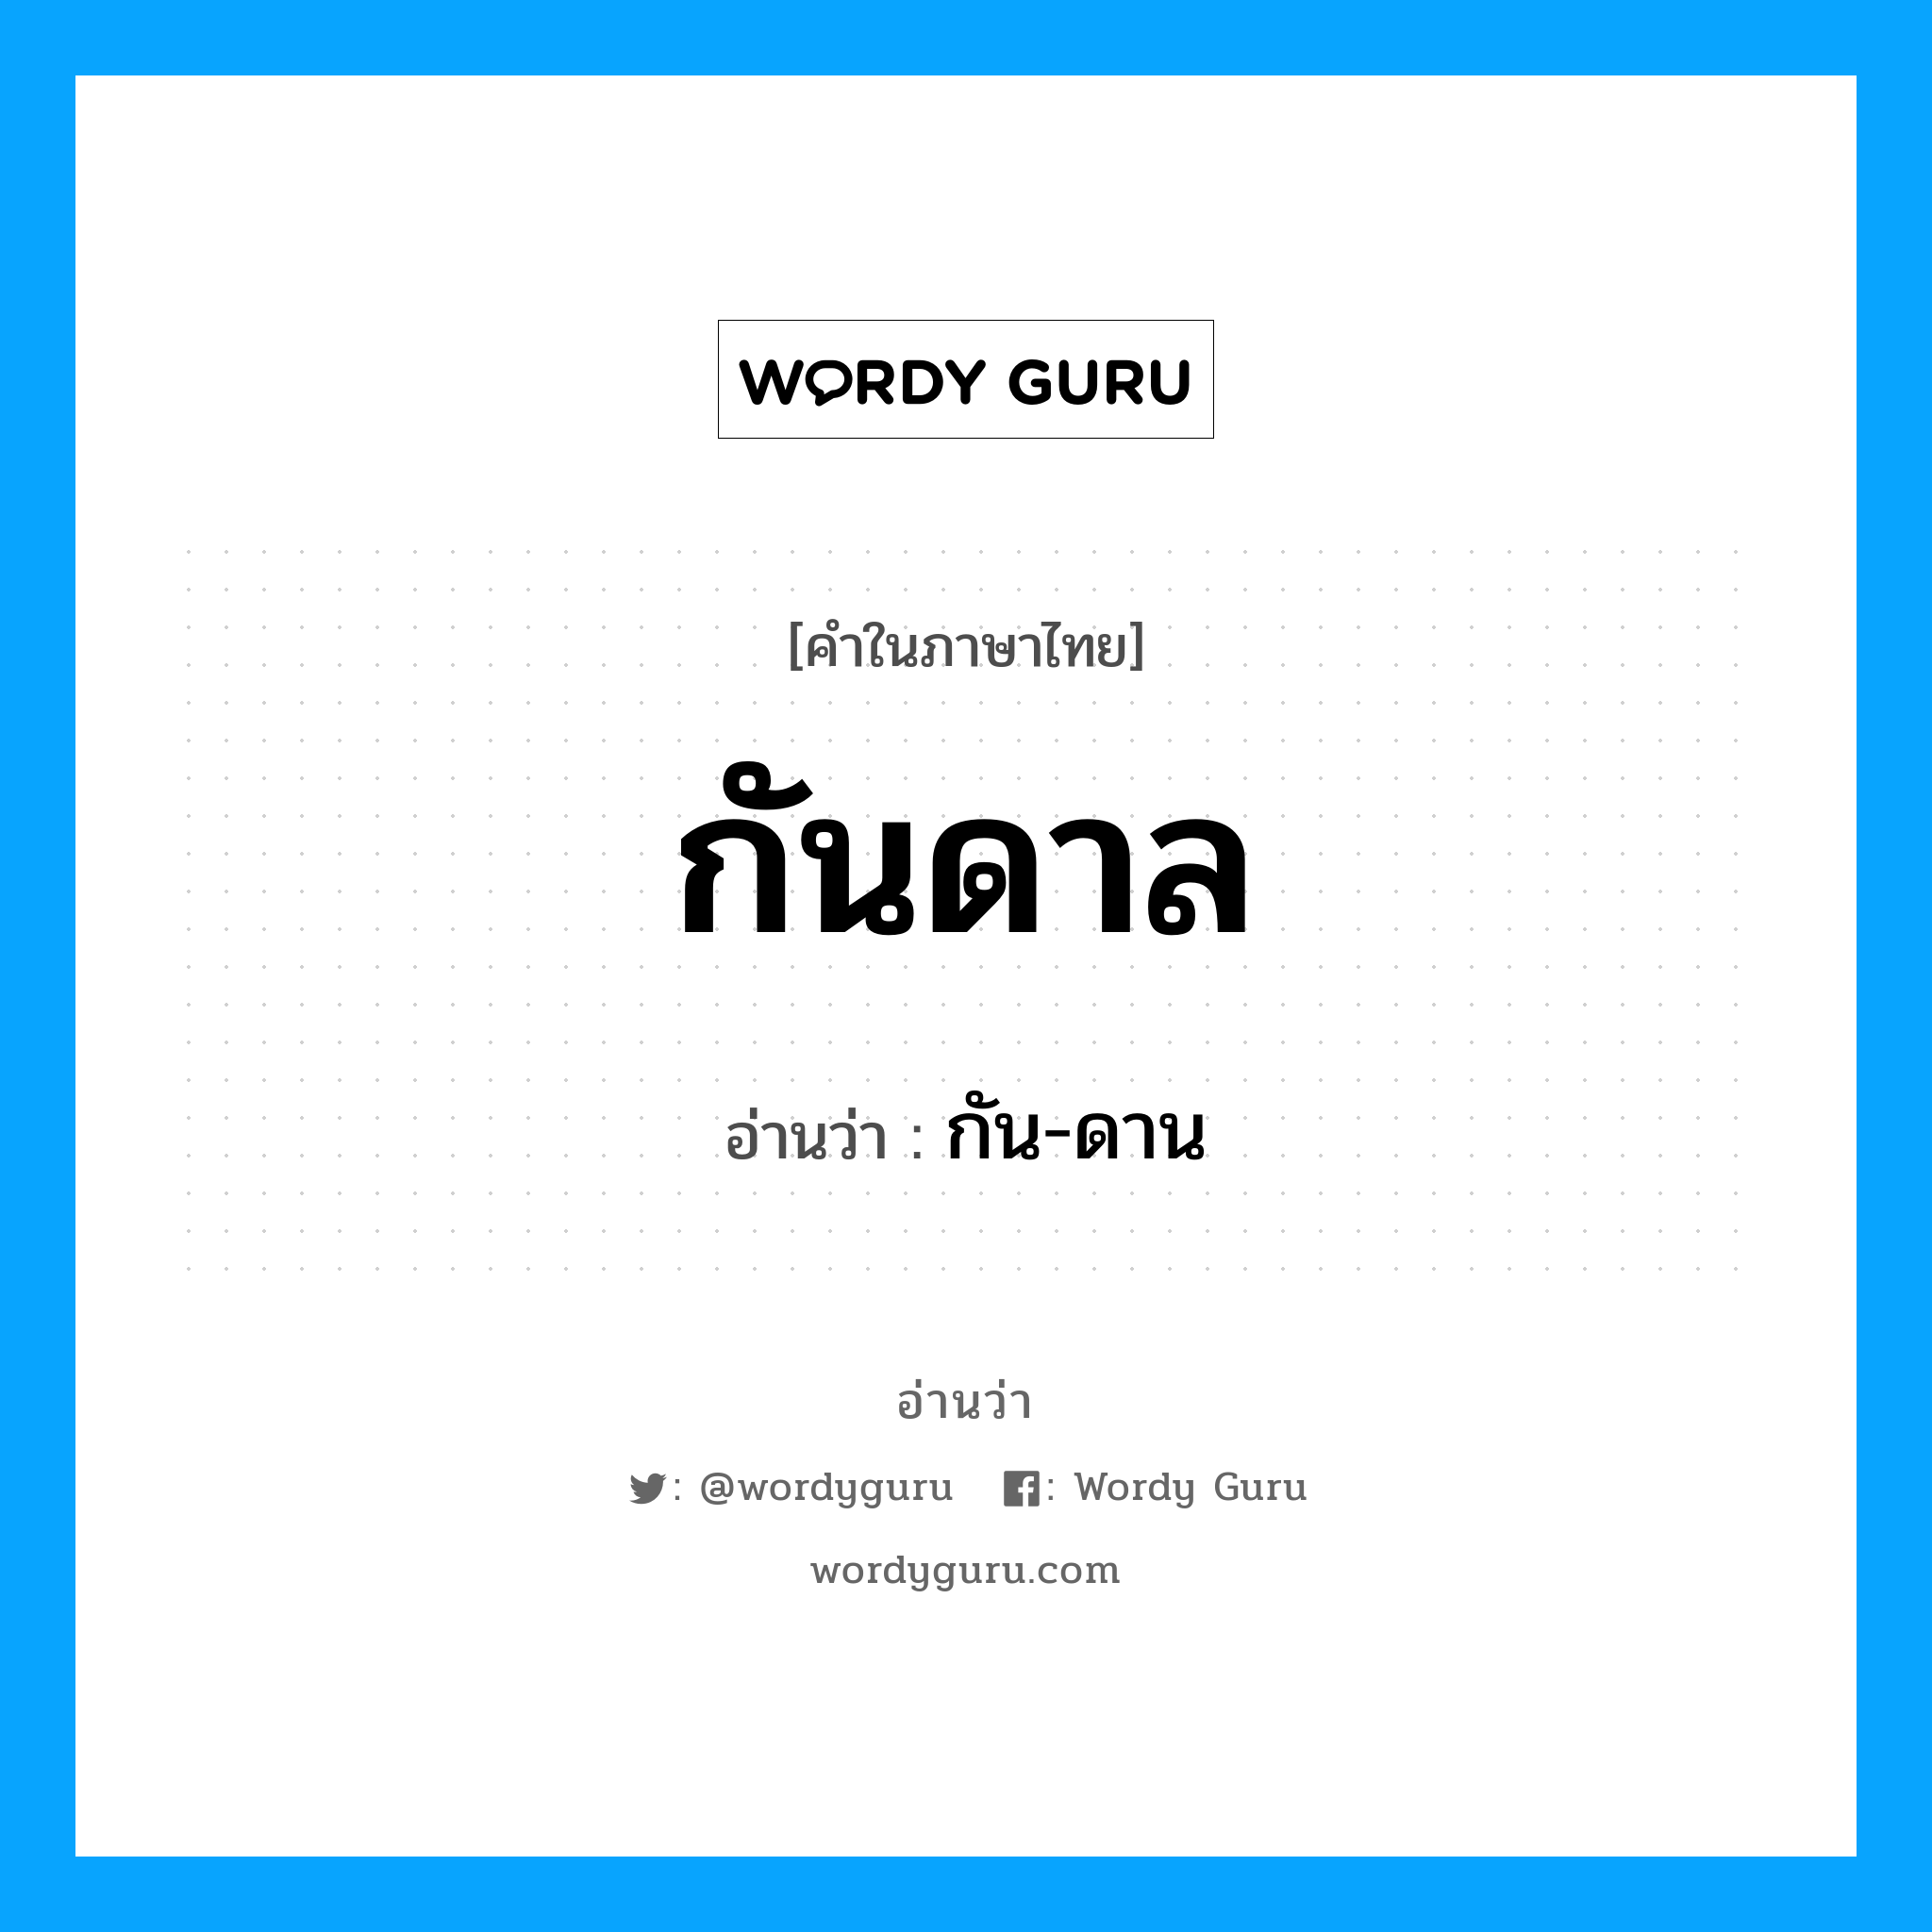 กัน-ดาน เป็นคำอ่านของคำไหน?, คำในภาษาไทย กัน-ดาน อ่านว่า กันดาล